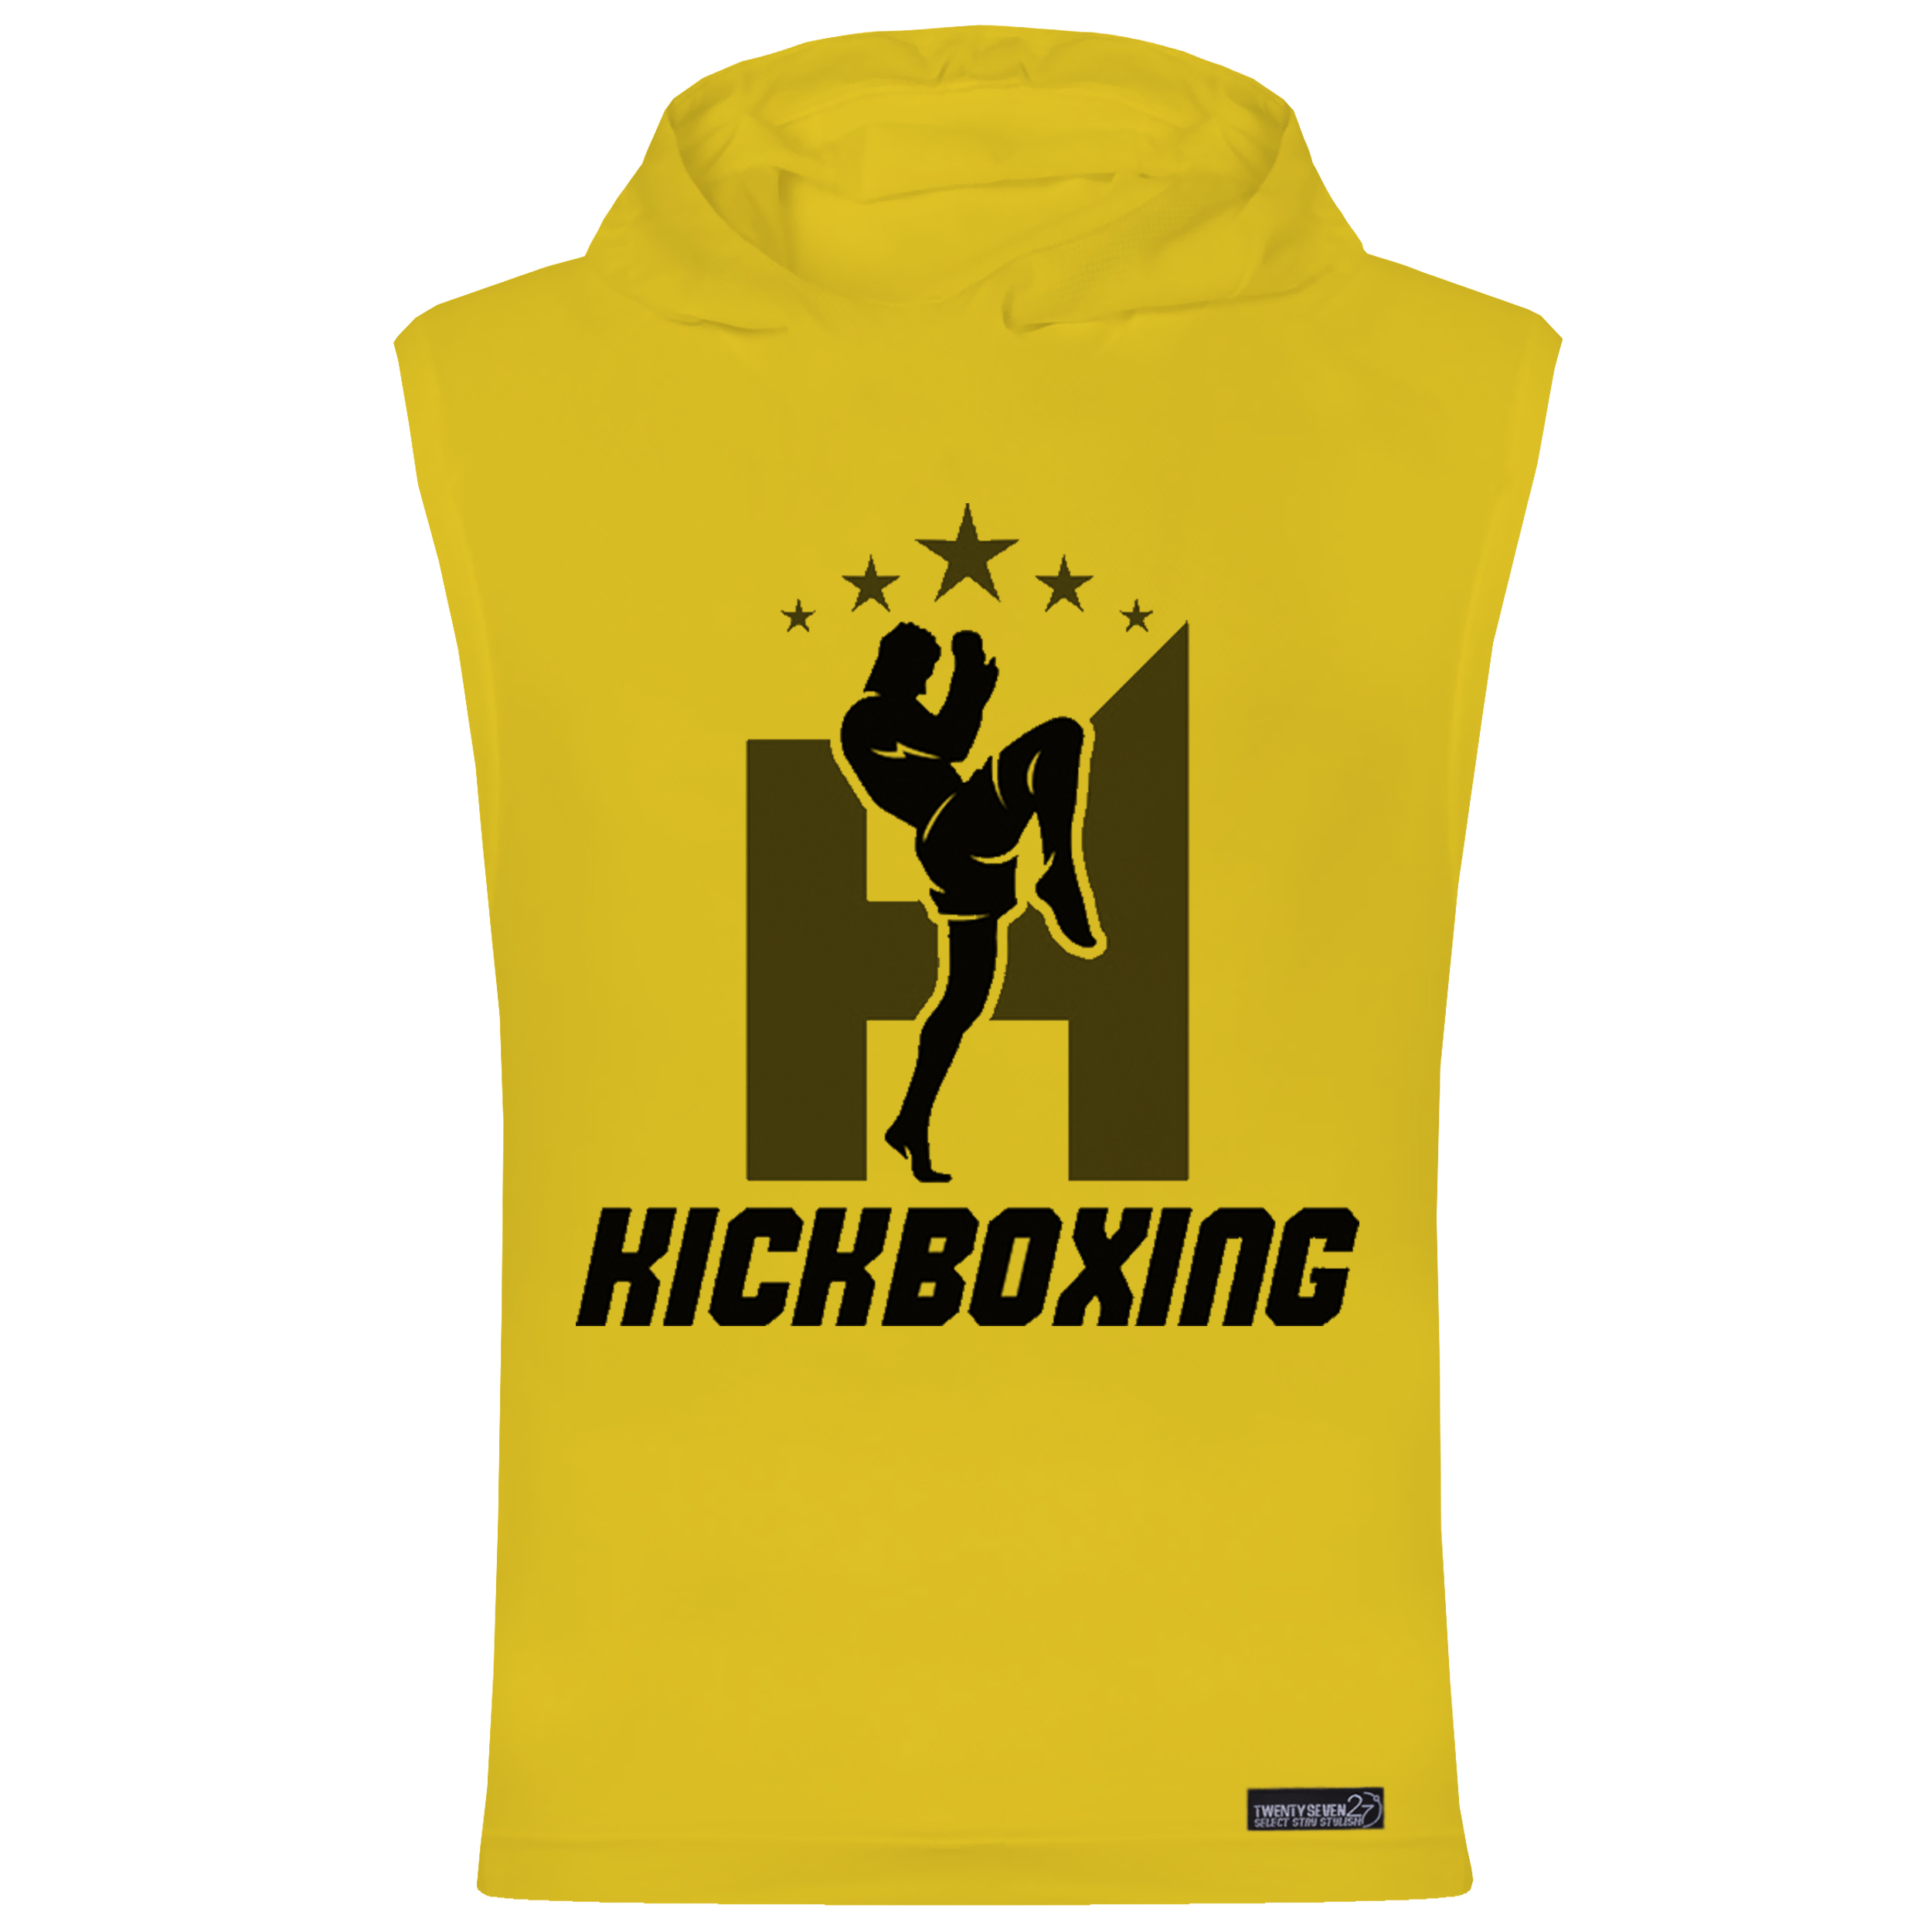 تاپ کلاه دار مردانه 27 مدل Kickboxing کد MH883